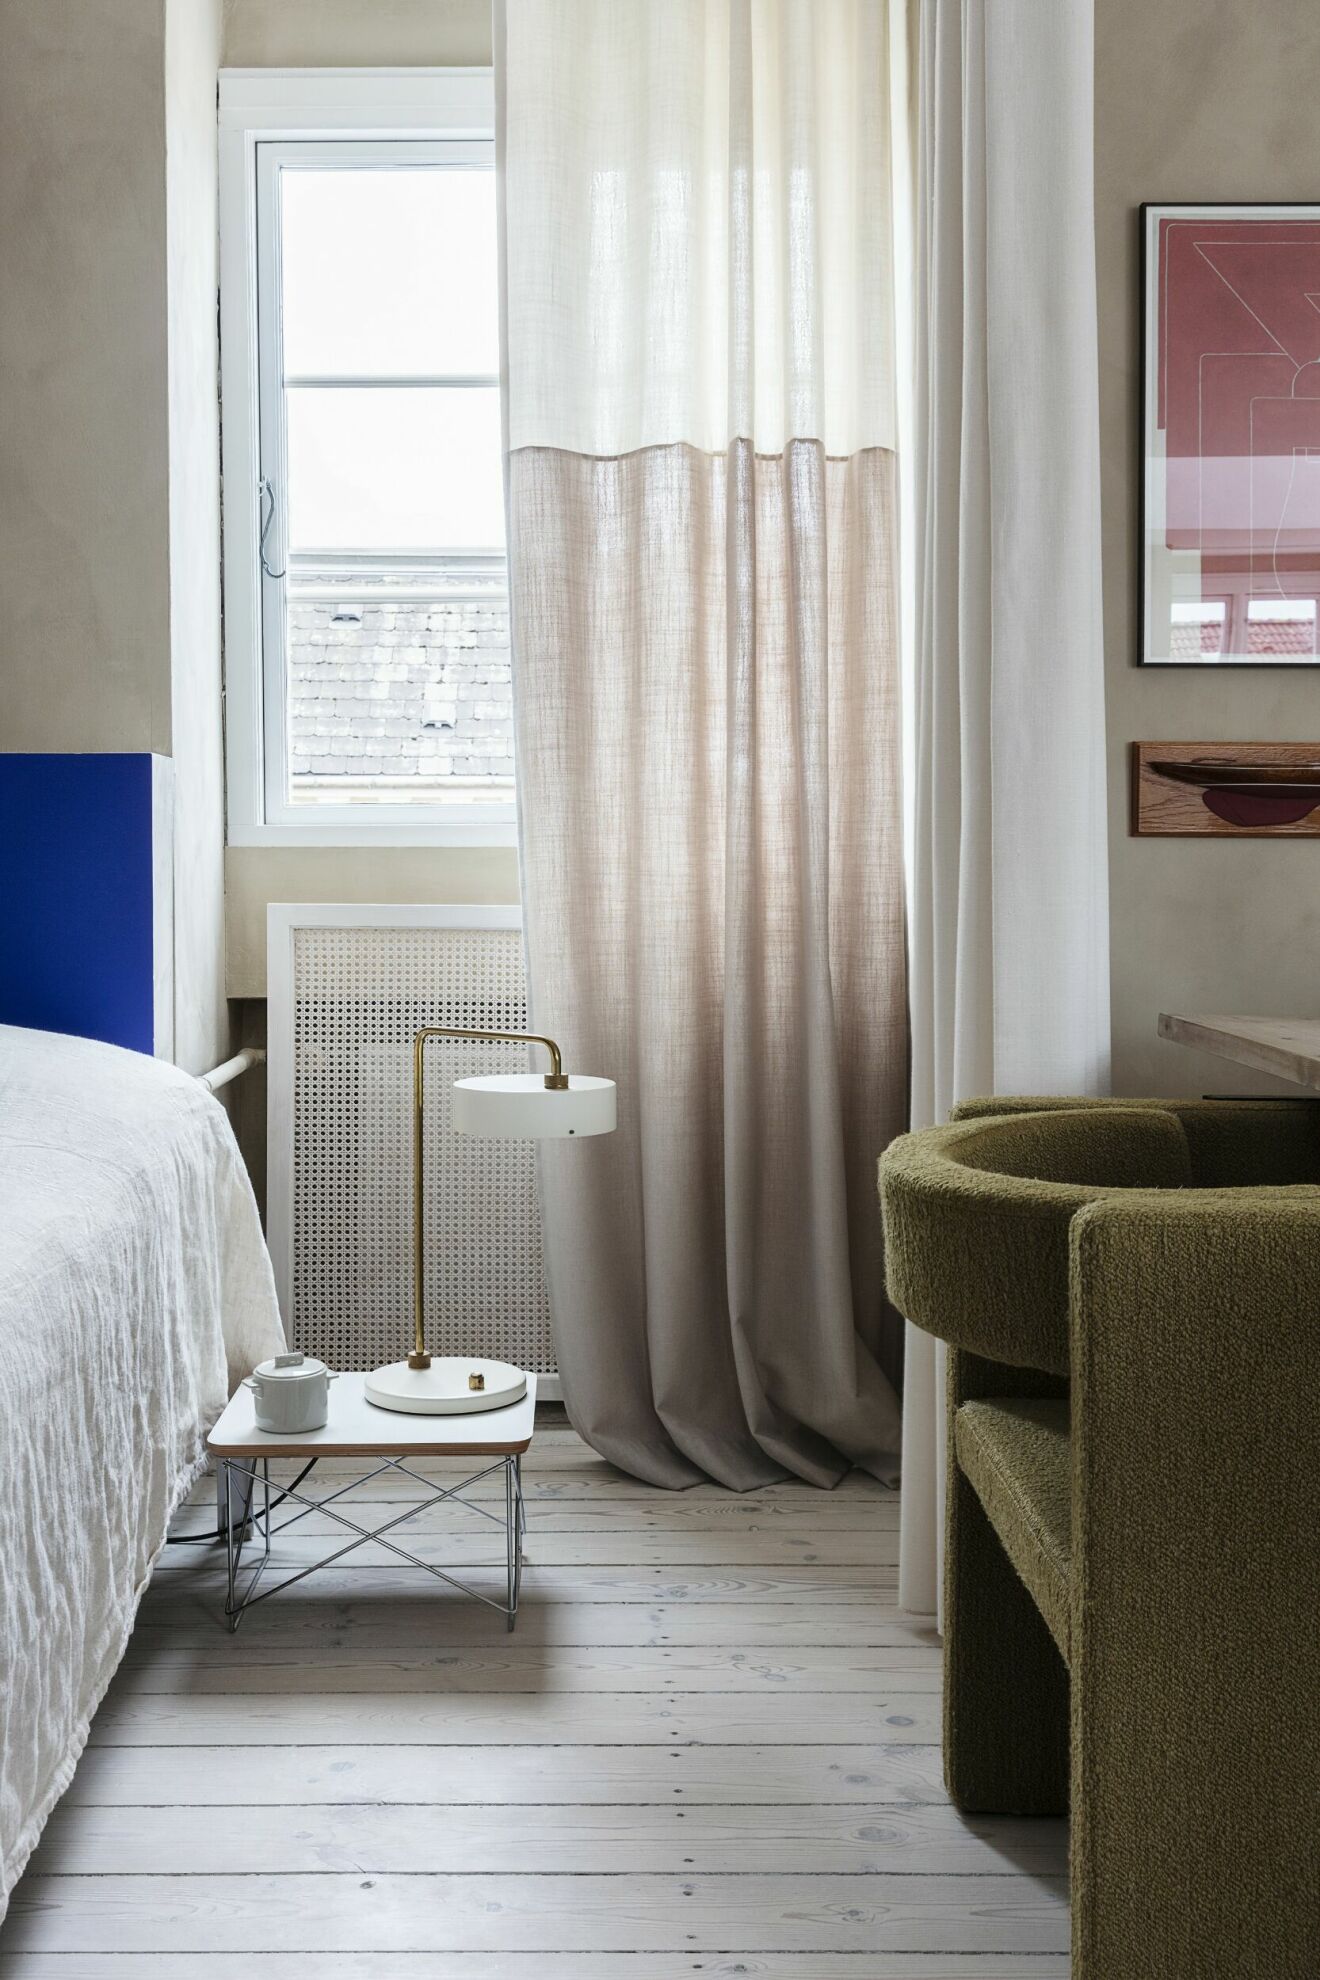 Alla gardiner och draperier i lägenheten är special­beställda från det danska &amp;drape. På det lilla bordet från Eames står lampan ­Petite ­Machine från Made by Hand.